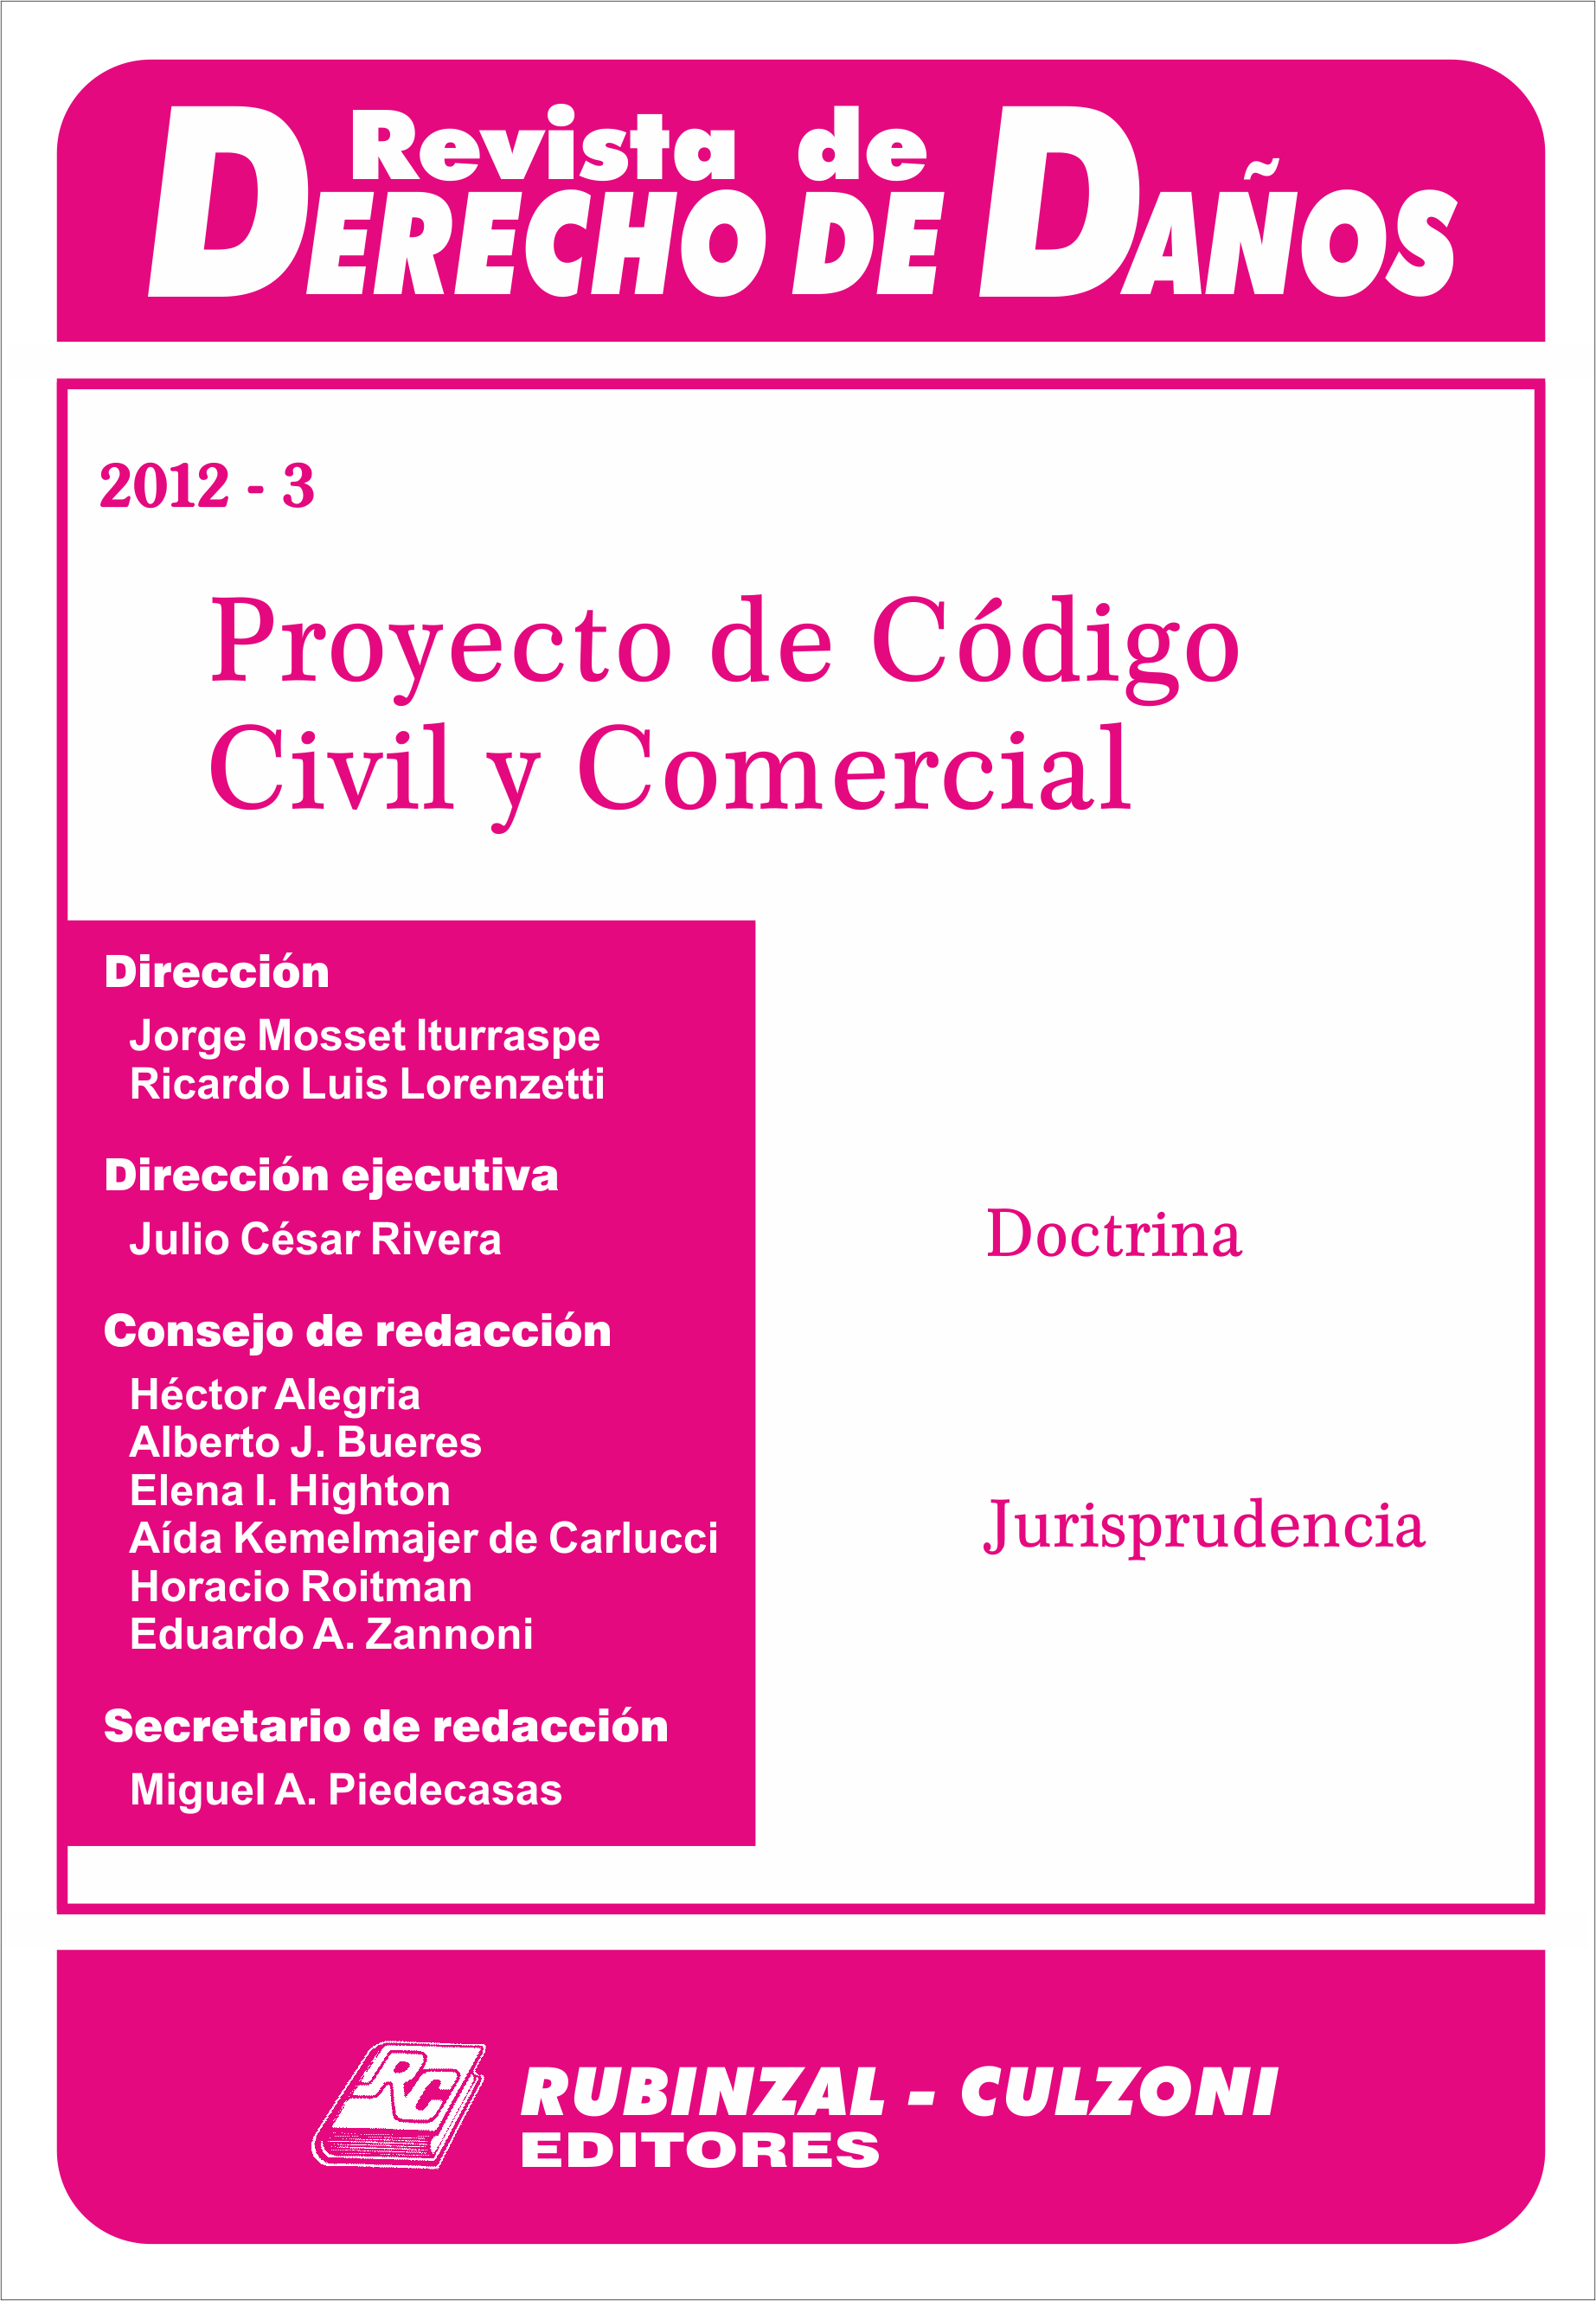 Revista de Derecho de Daños - Proyecto de Código Civil y Comercial.